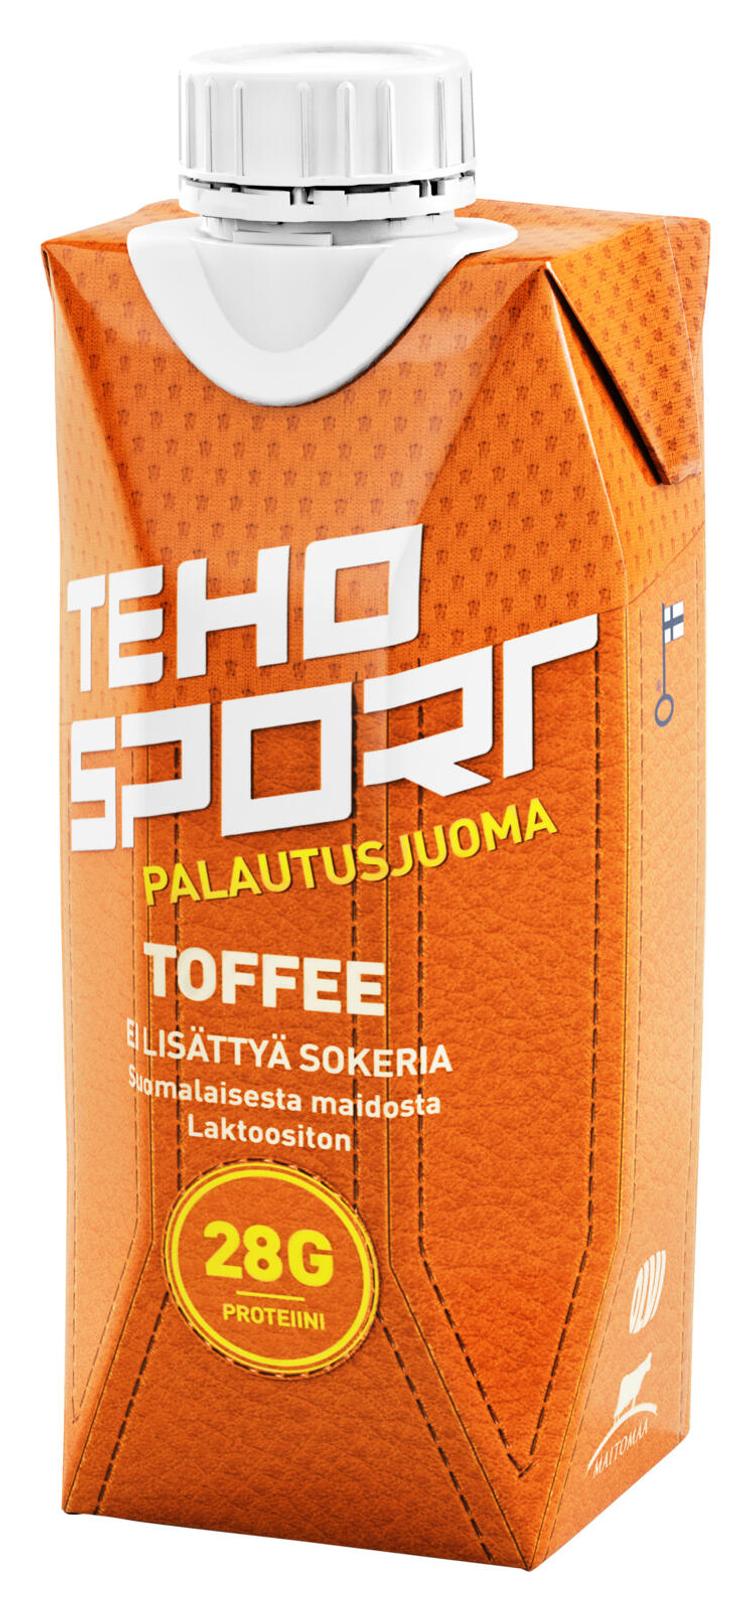 TEHO Sport ei lisättyä sokeria Toffee palautusjuoma 0,33 l